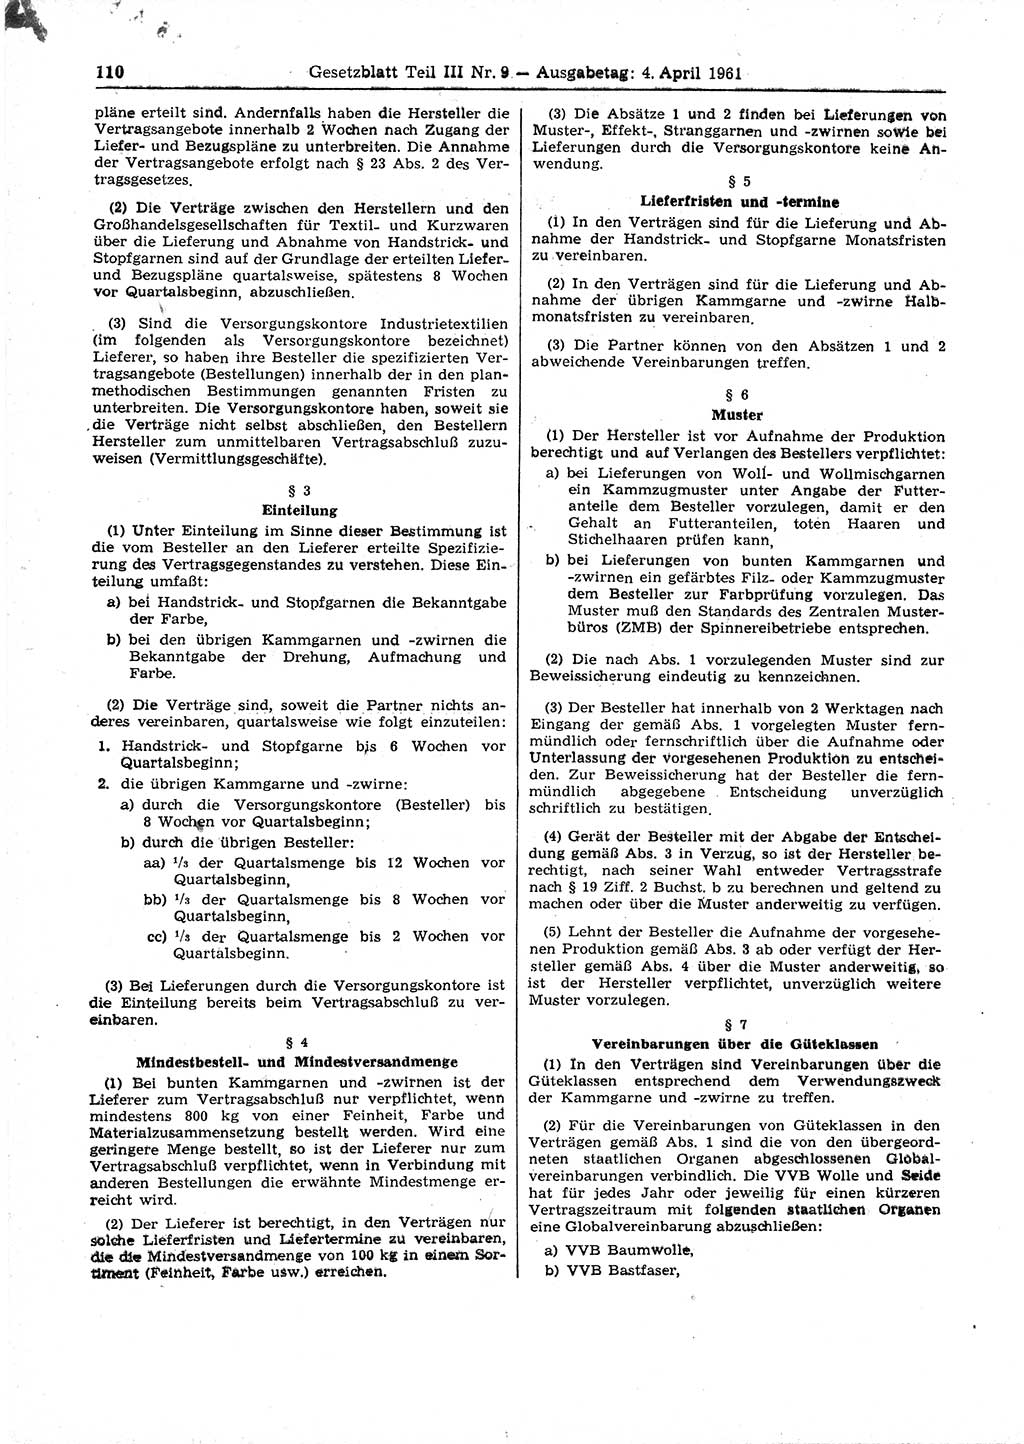 Gesetzblatt (GBl.) der Deutschen Demokratischen Republik (DDR) Teil ⅠⅠⅠ 1961, Seite 110 (GBl. DDR ⅠⅠⅠ 1961, S. 110)